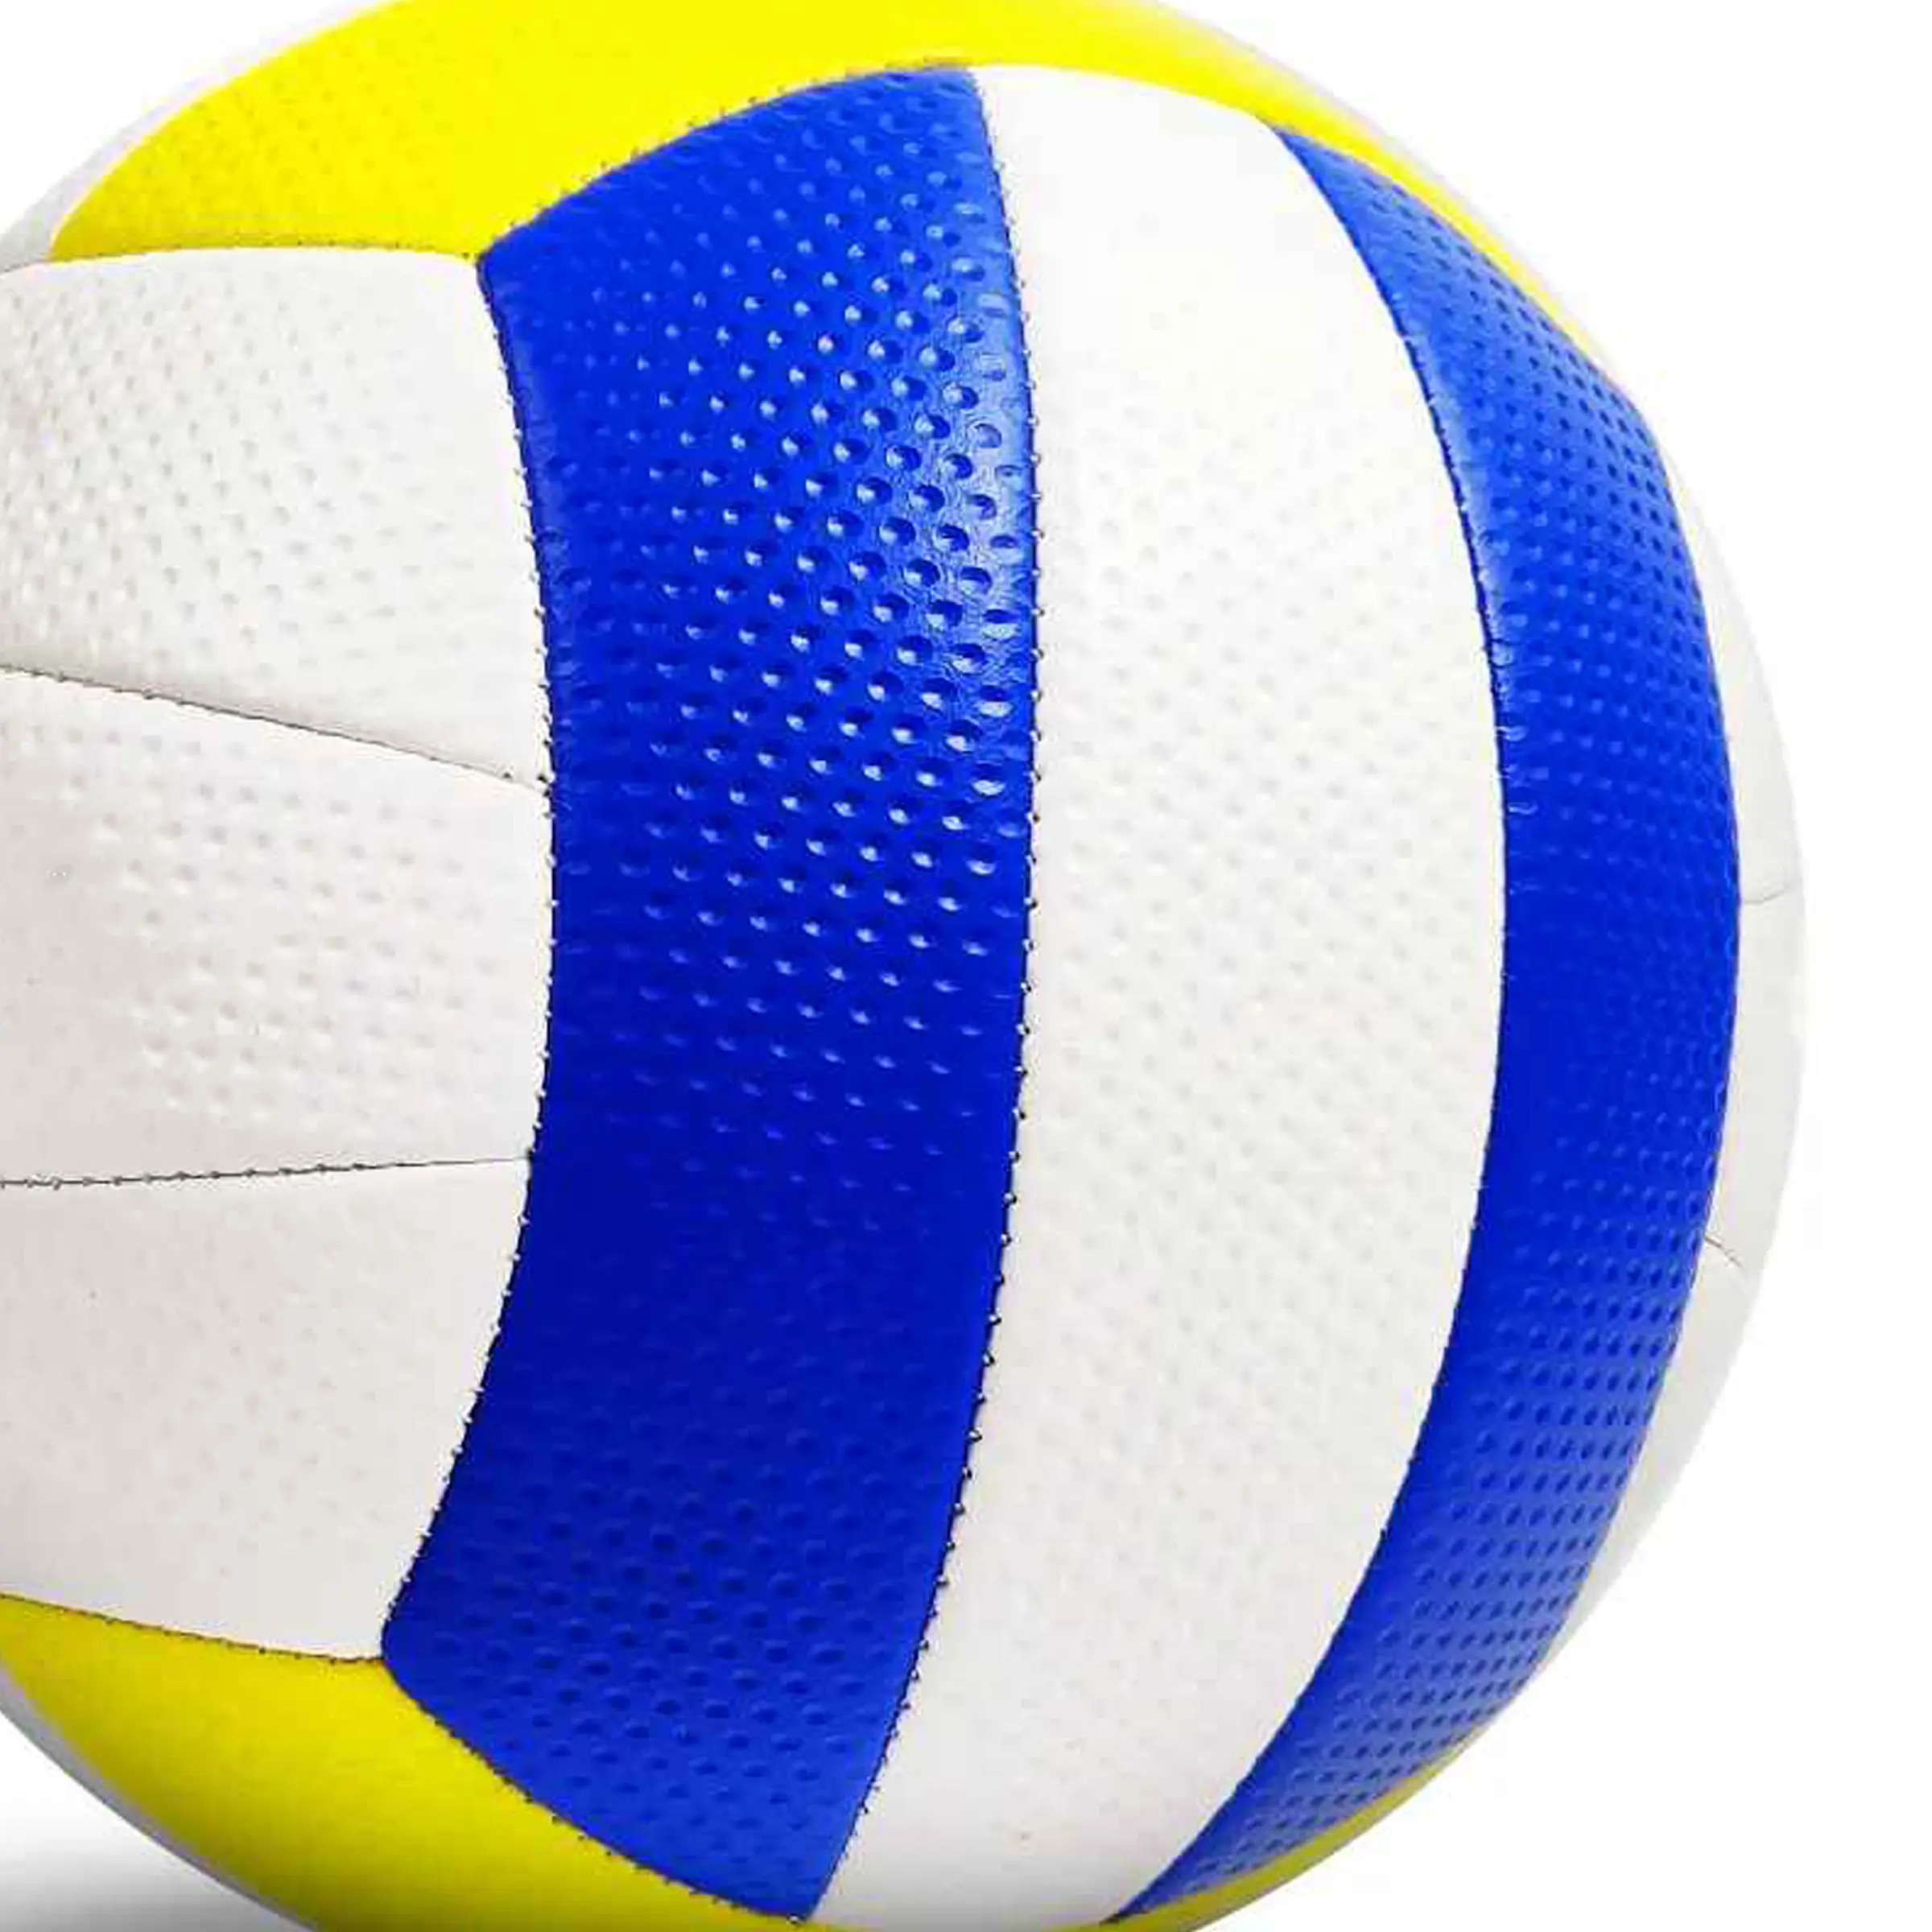 Bola de voleibol de praia de borracha de toque macio de alta qualidade padrão oficial tamanho 5 costurado à máquina novo design bola de voleibol futebol